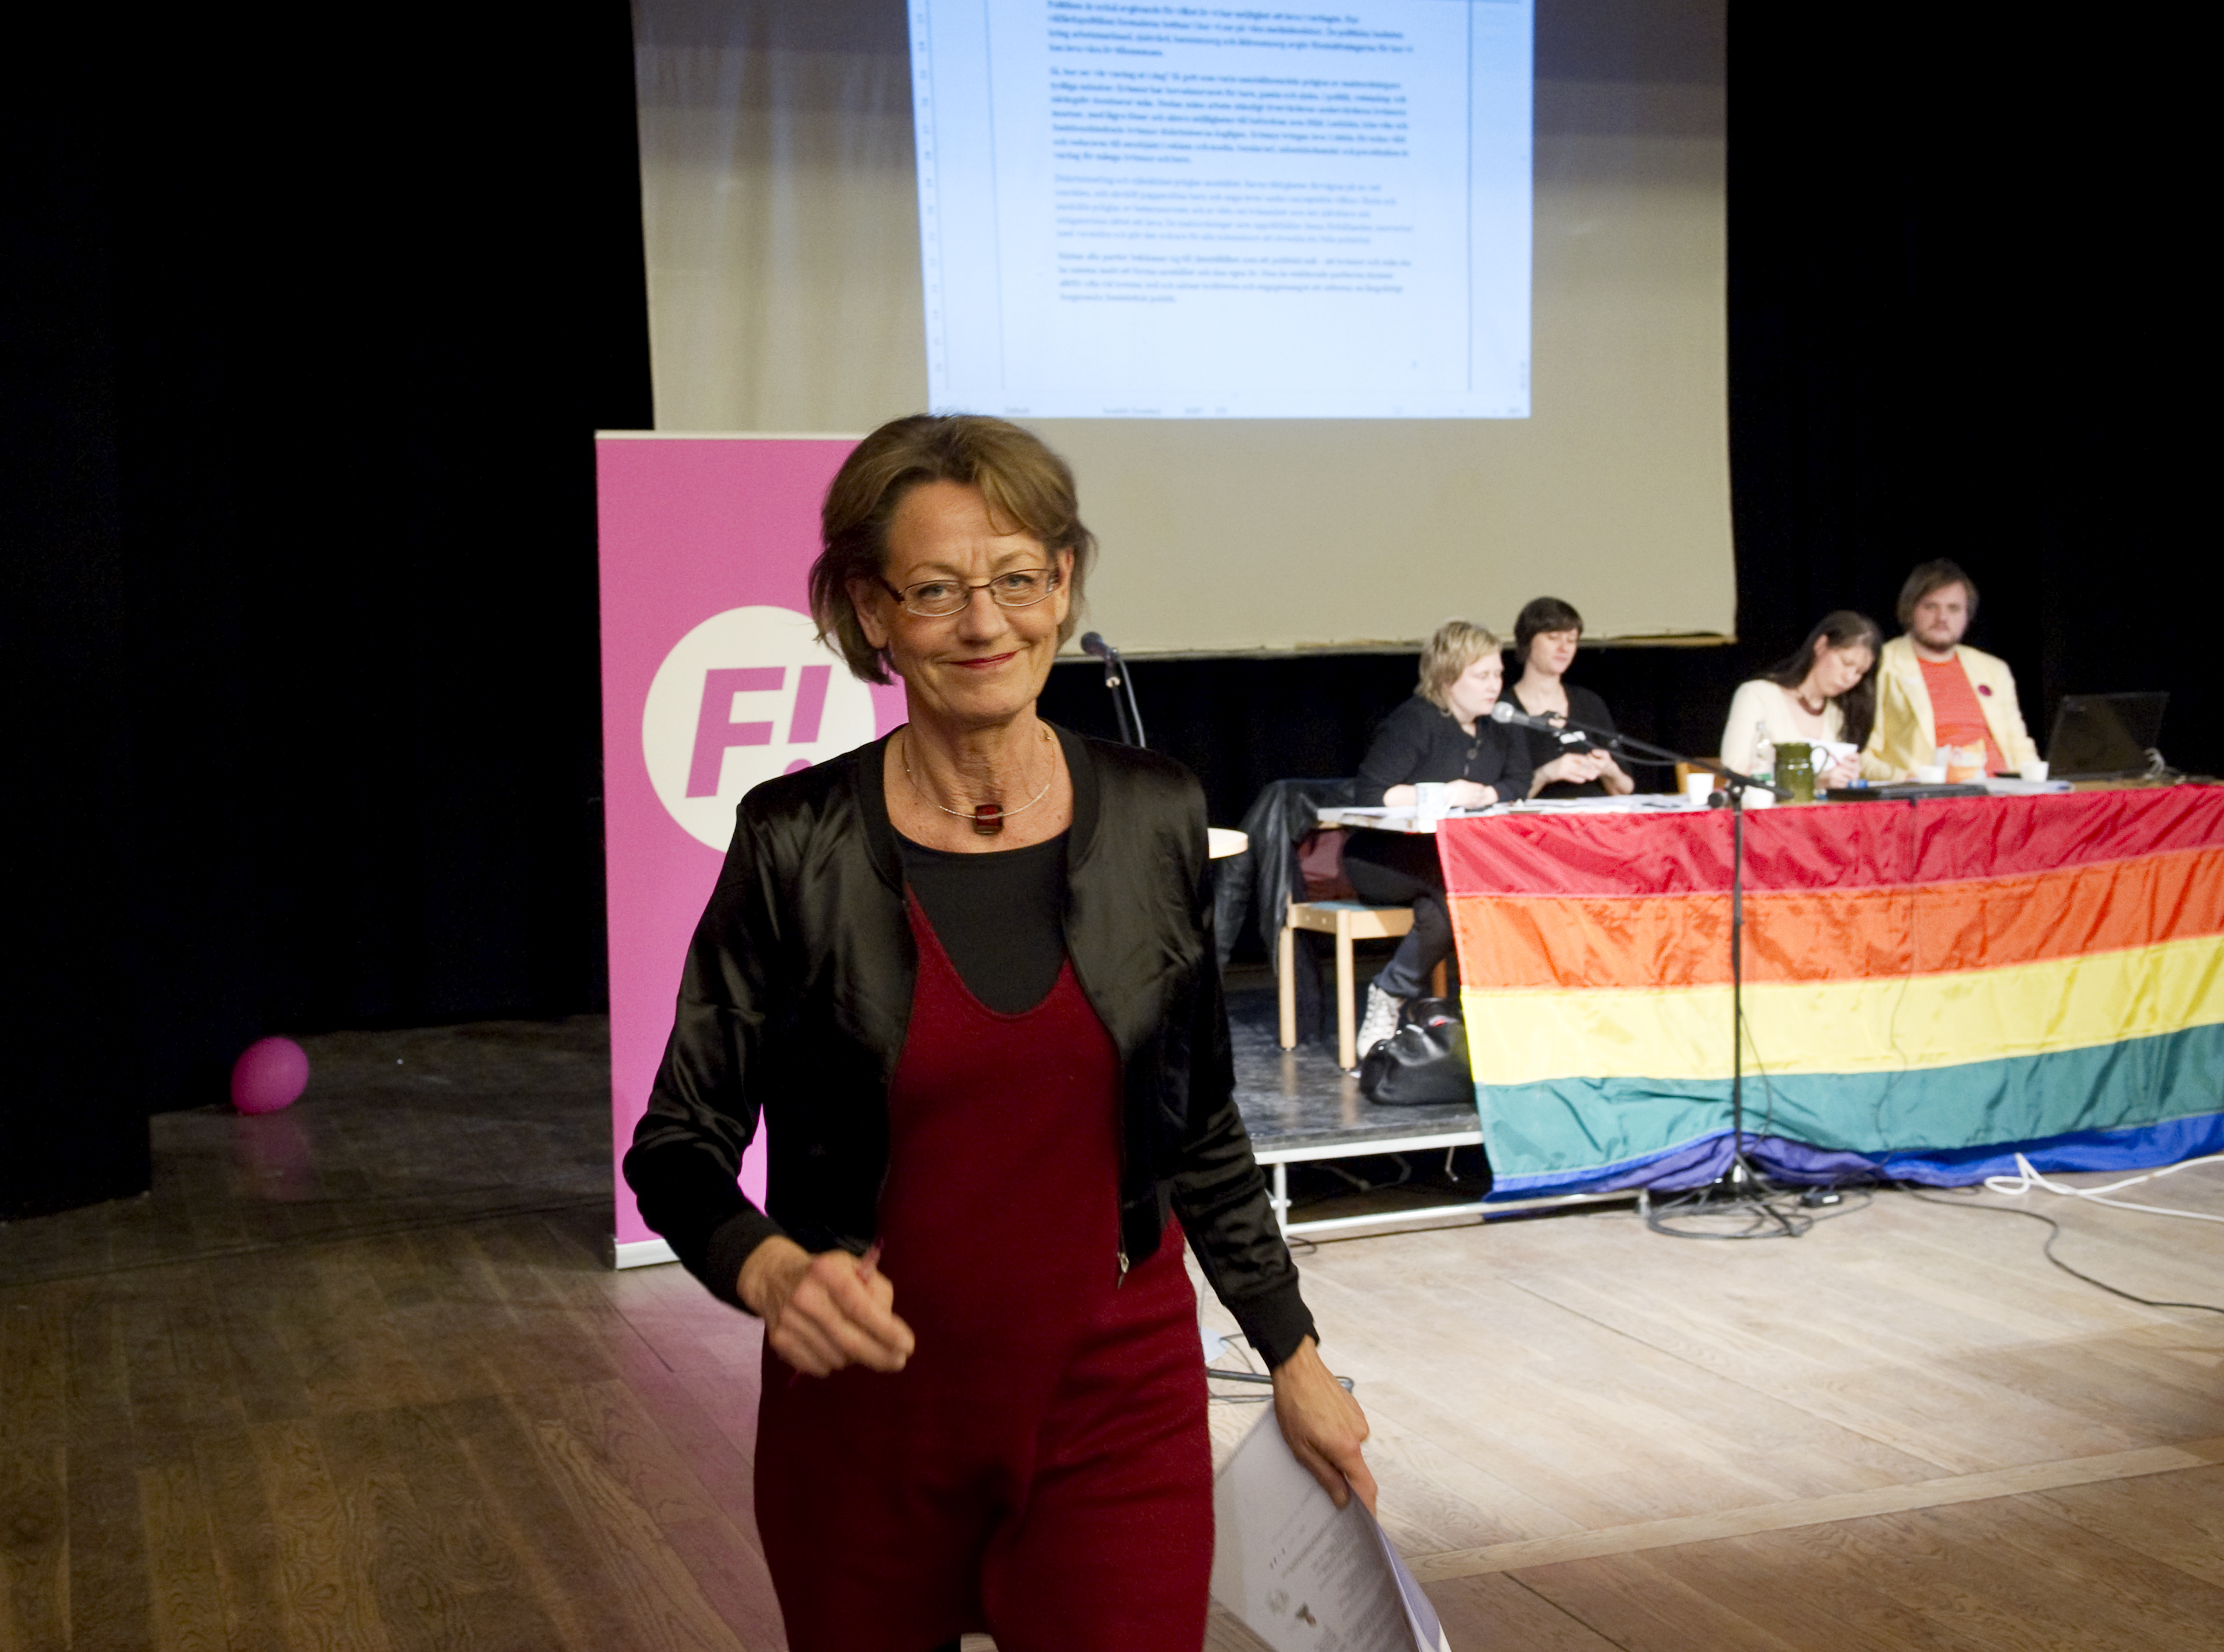 Feministiskt initiativ, Riksdagsvalet 2010, Gudrun Schyman, Arbetsmarknad, Lönediskriminering